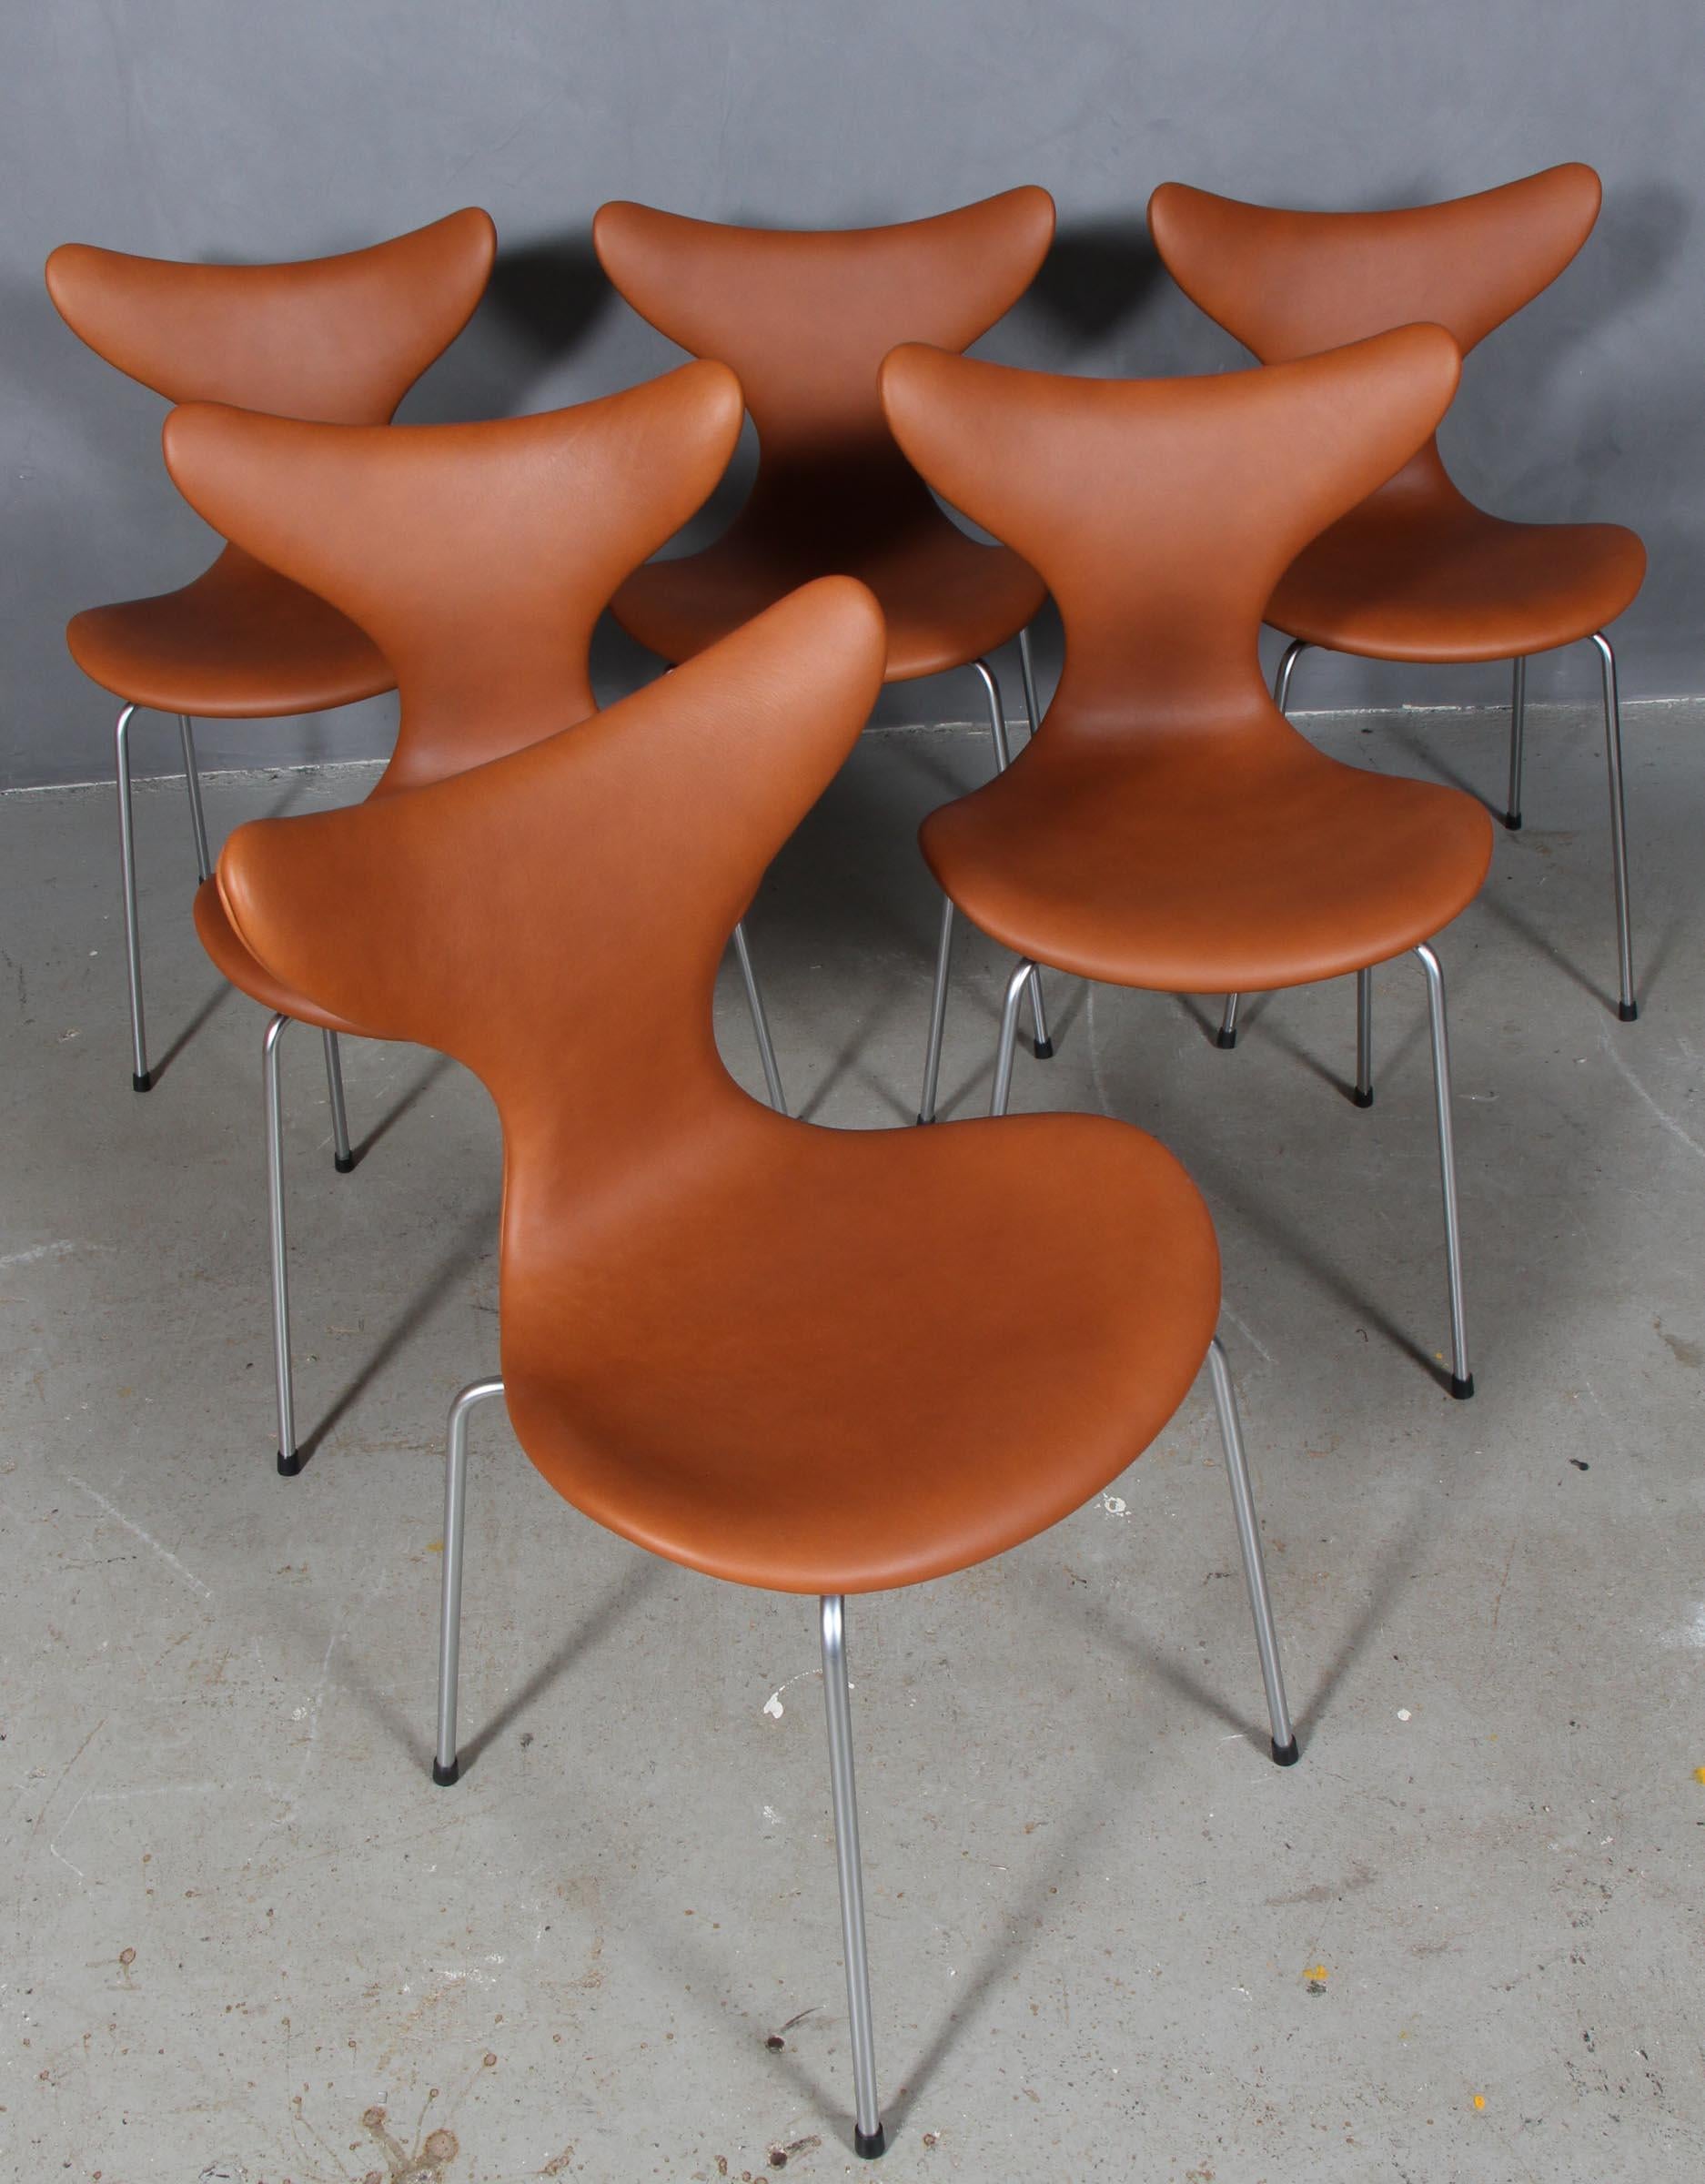 Arne Jacobsen dining chair new upholstered with walnut elegance aniline leather.

Base of matt chromed steel tube.

Model 3108 Seagull, made by Fritz Hansen.